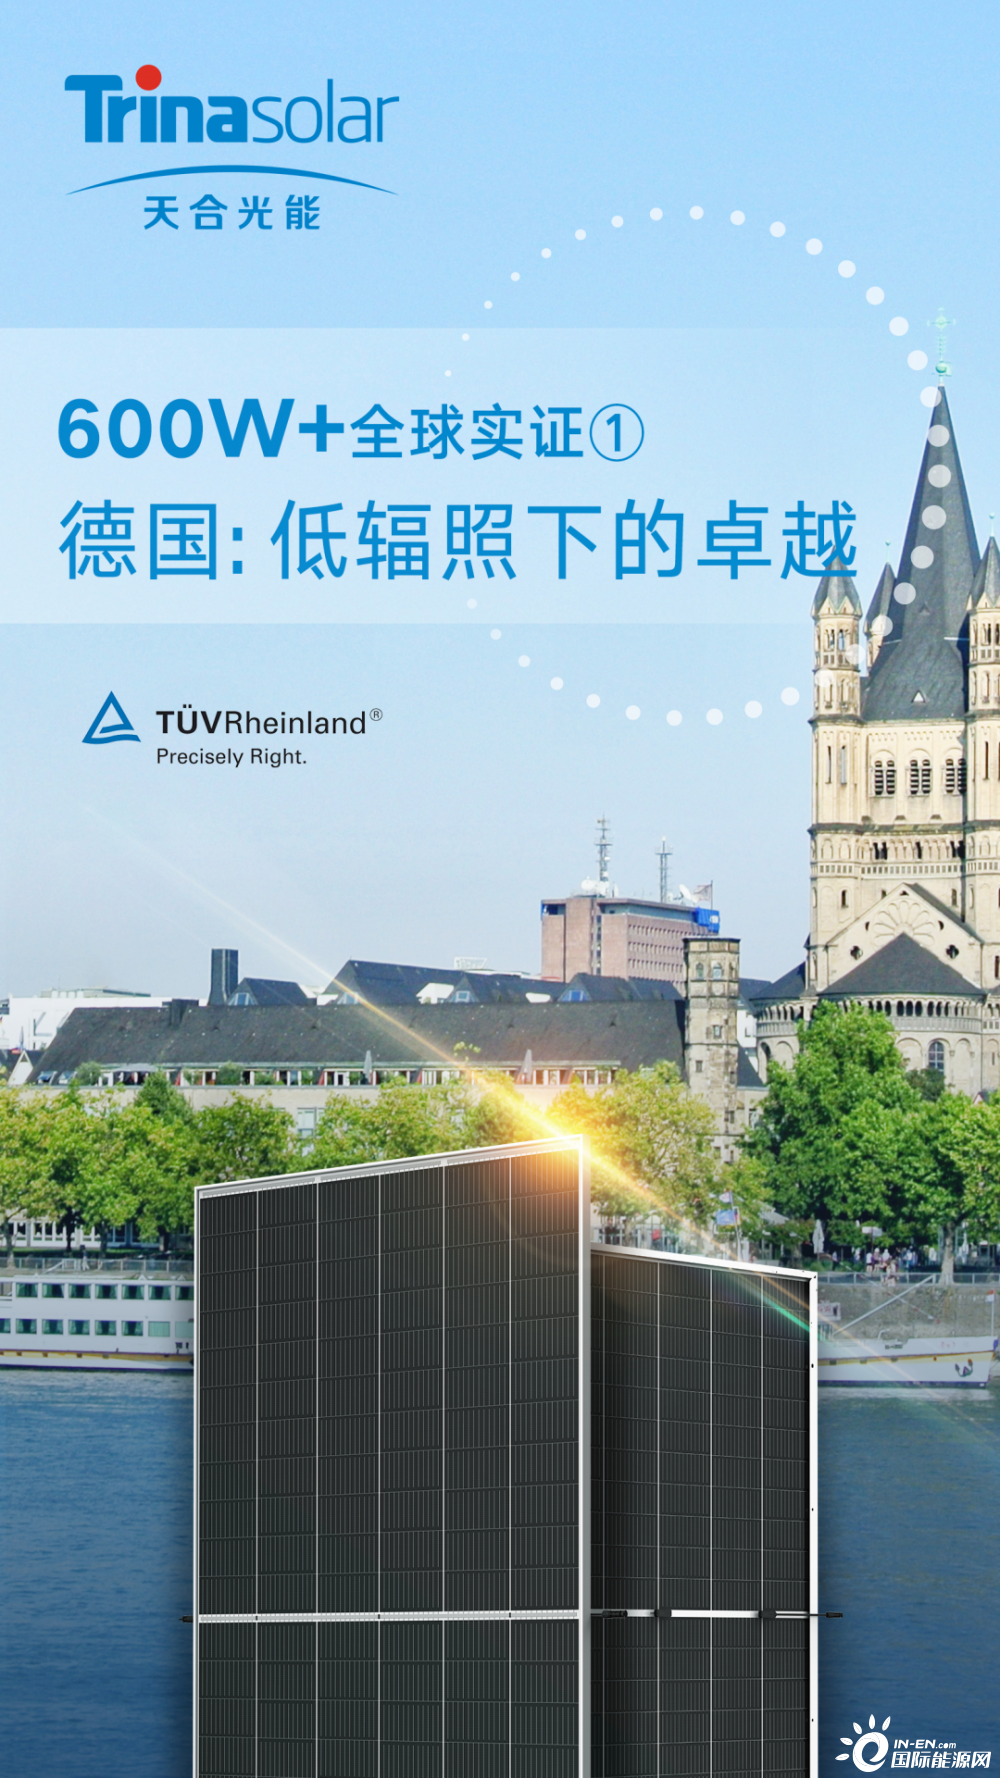 天合光能600W+德国实证单瓦发电量增益超2% 低辐照下优势显著